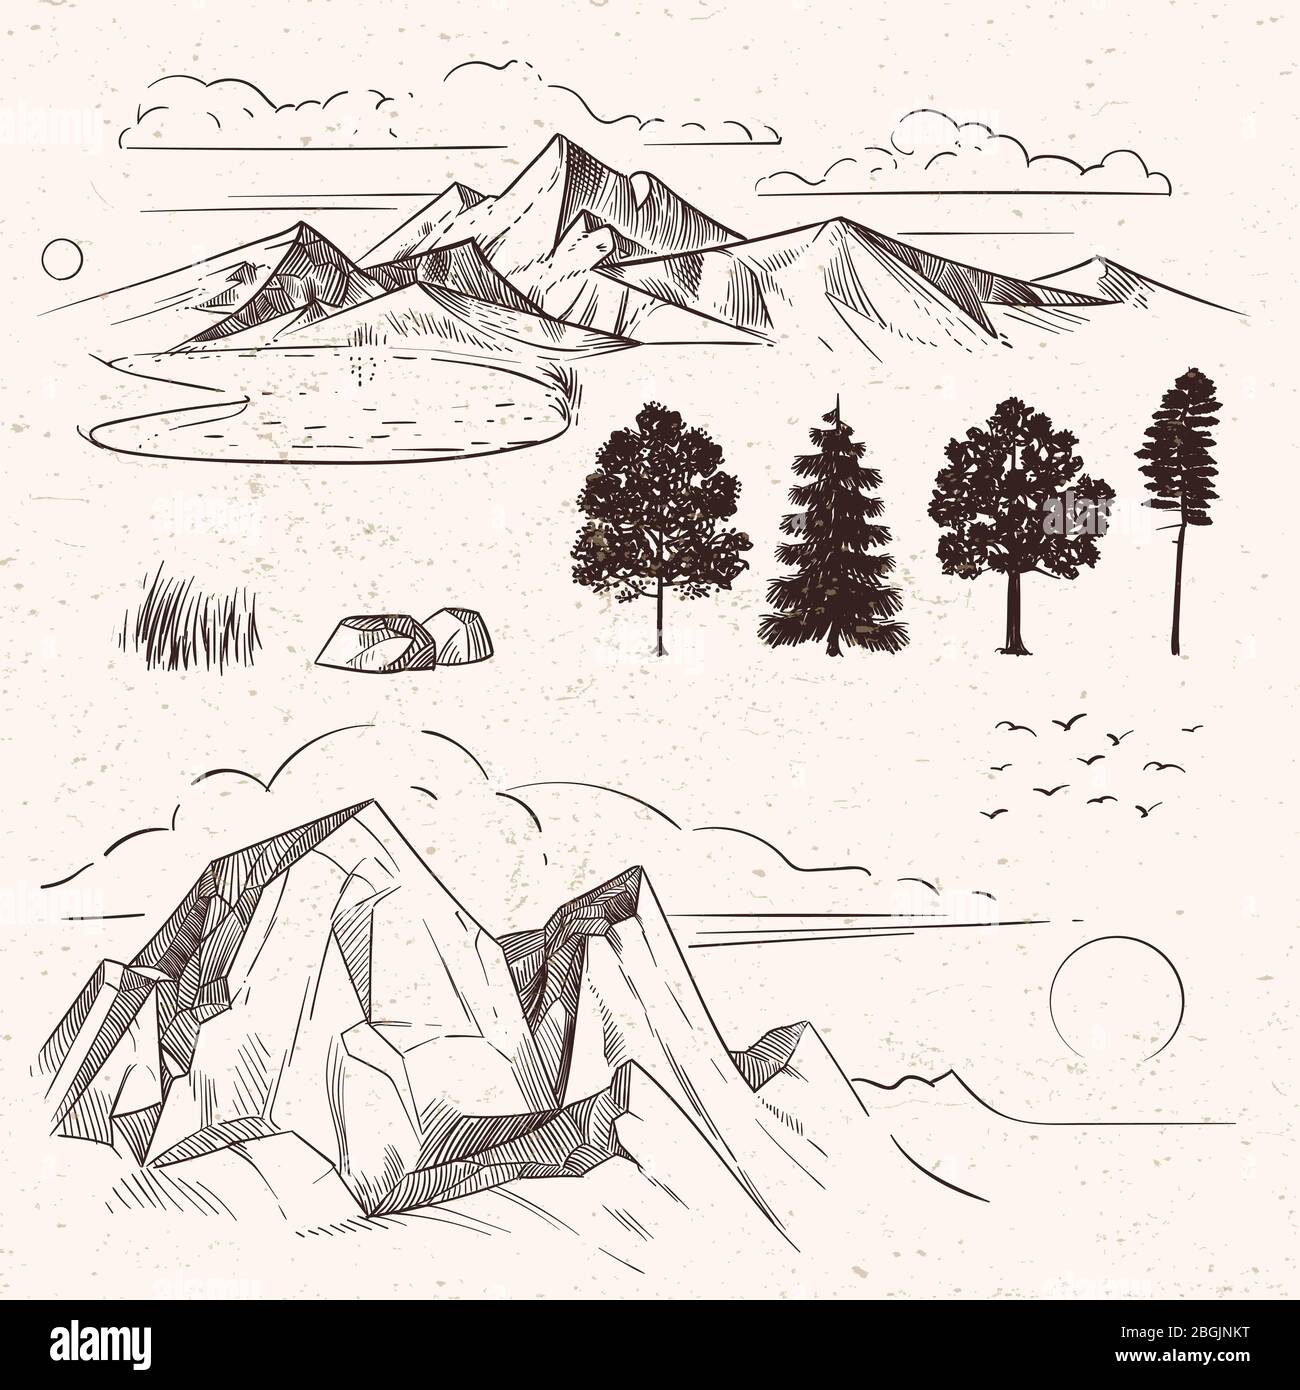 Disegno manuale di montagne, picchi nuvole, sole e alberi di foresta su sfondo sporco grunge. Illustrazione vettoriale Illustrazione Vettoriale